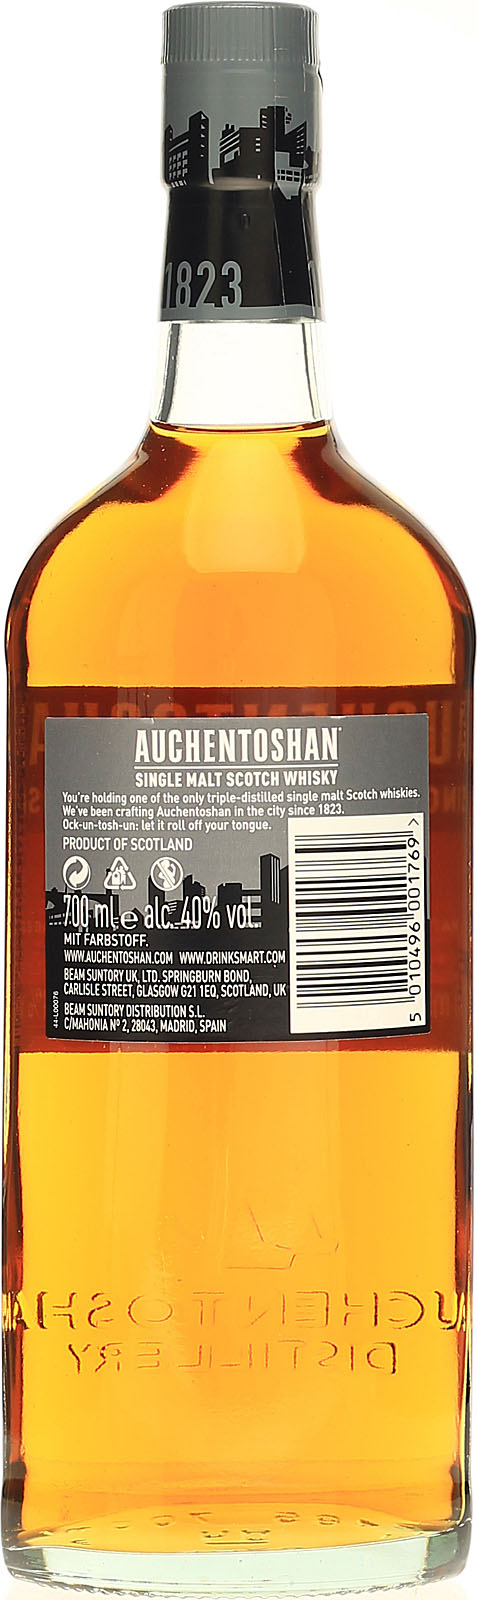 Auchentoshan Malt Lowland 0,7l Single 12 Whisky - Jahre